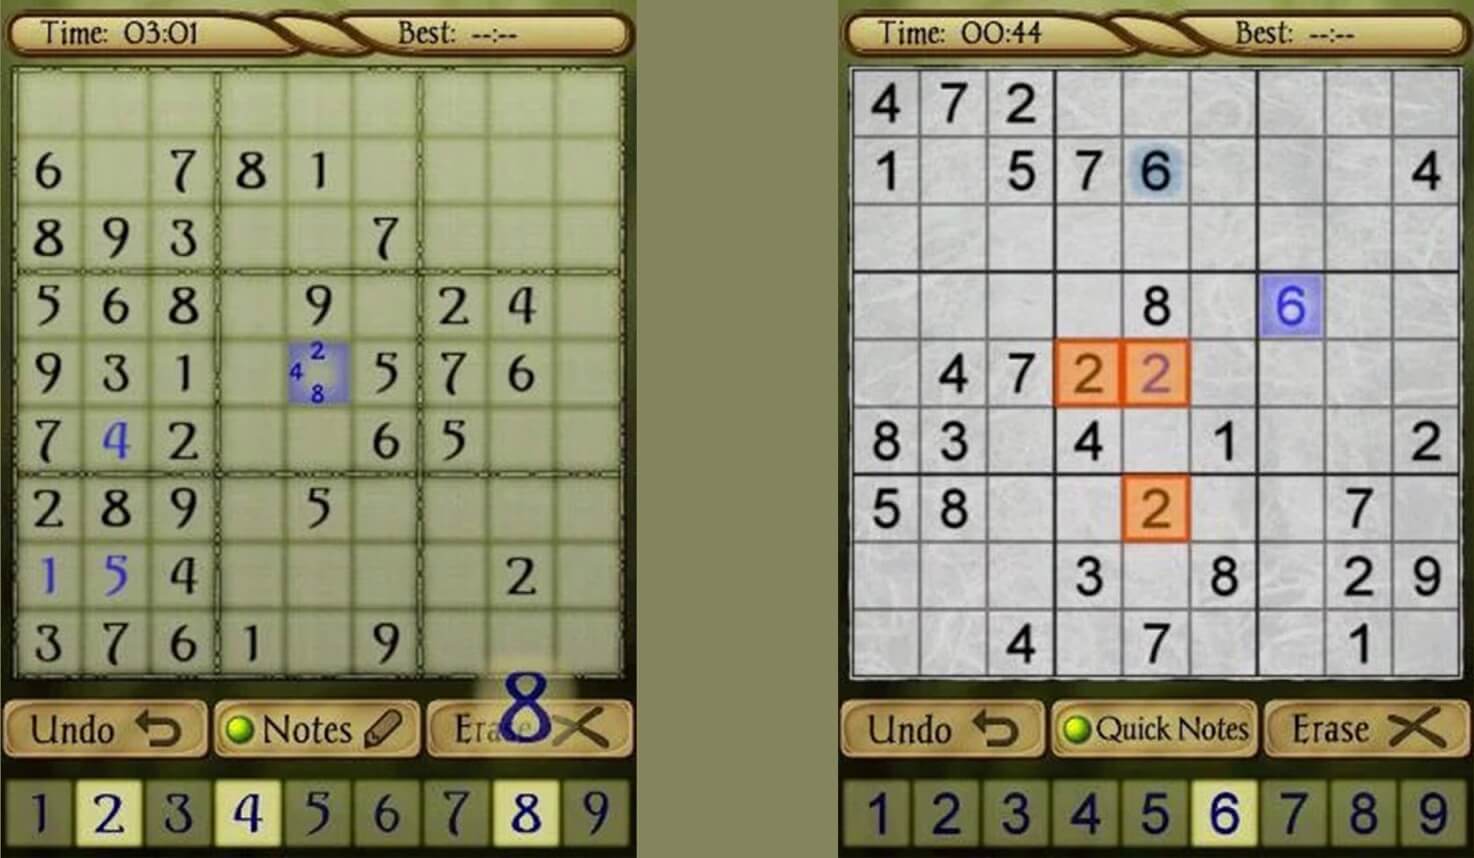 Лучшие головоломки для Android: судоку. AI Factory Sudoku- классическая судоку. Фото.